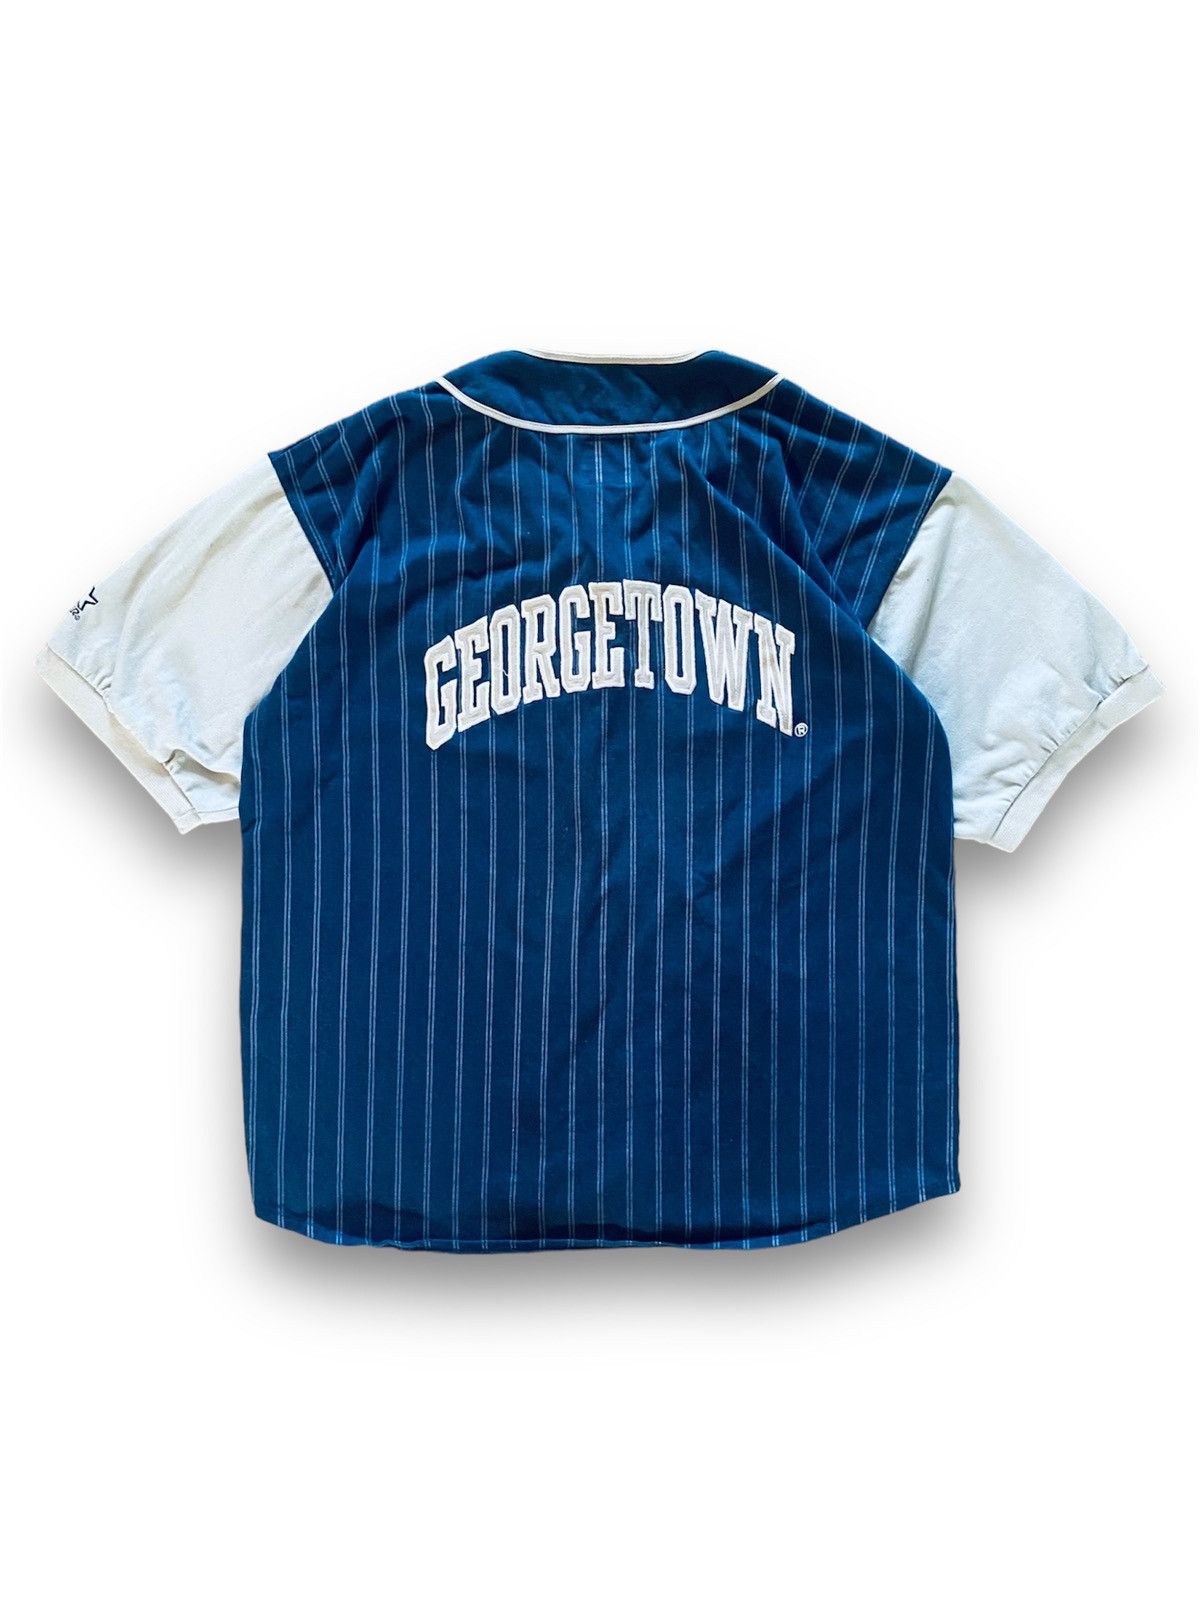 Starter Georgetown Hoyas Vintage Cotton Baseball Tee Men’s - 7